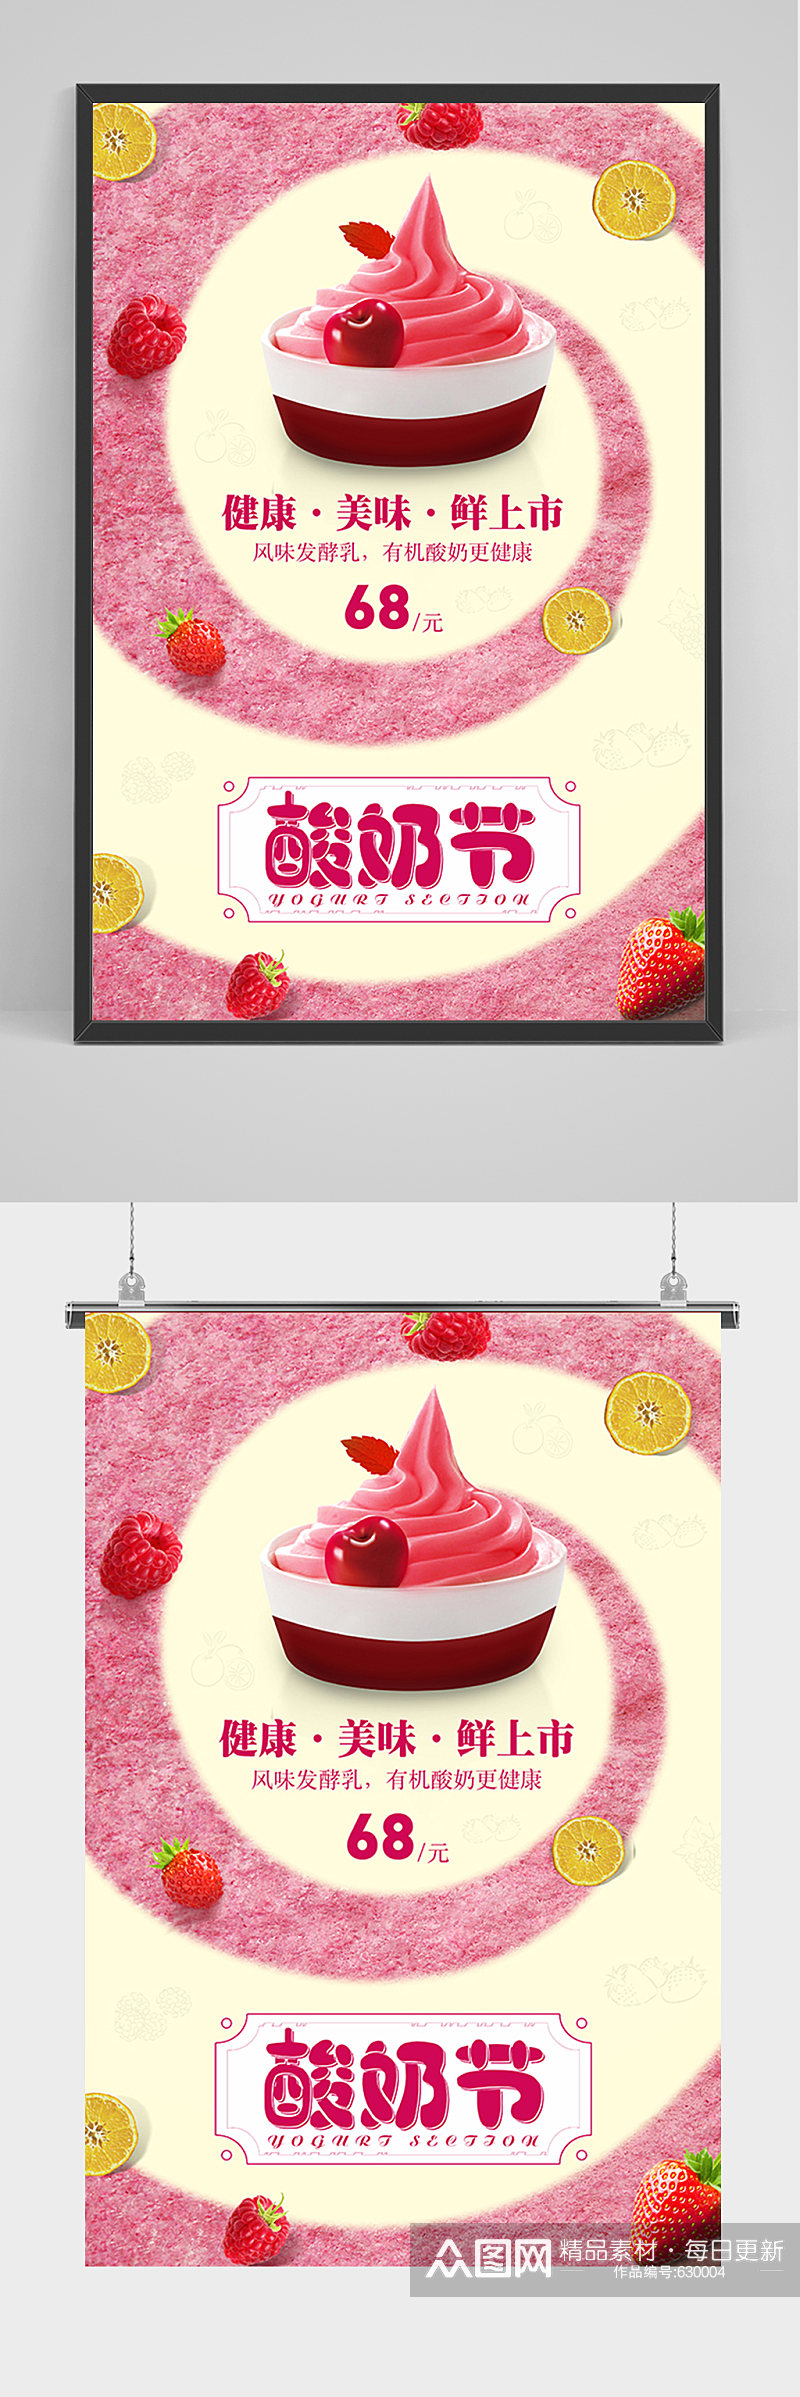 粉色酸奶节促销海报素材